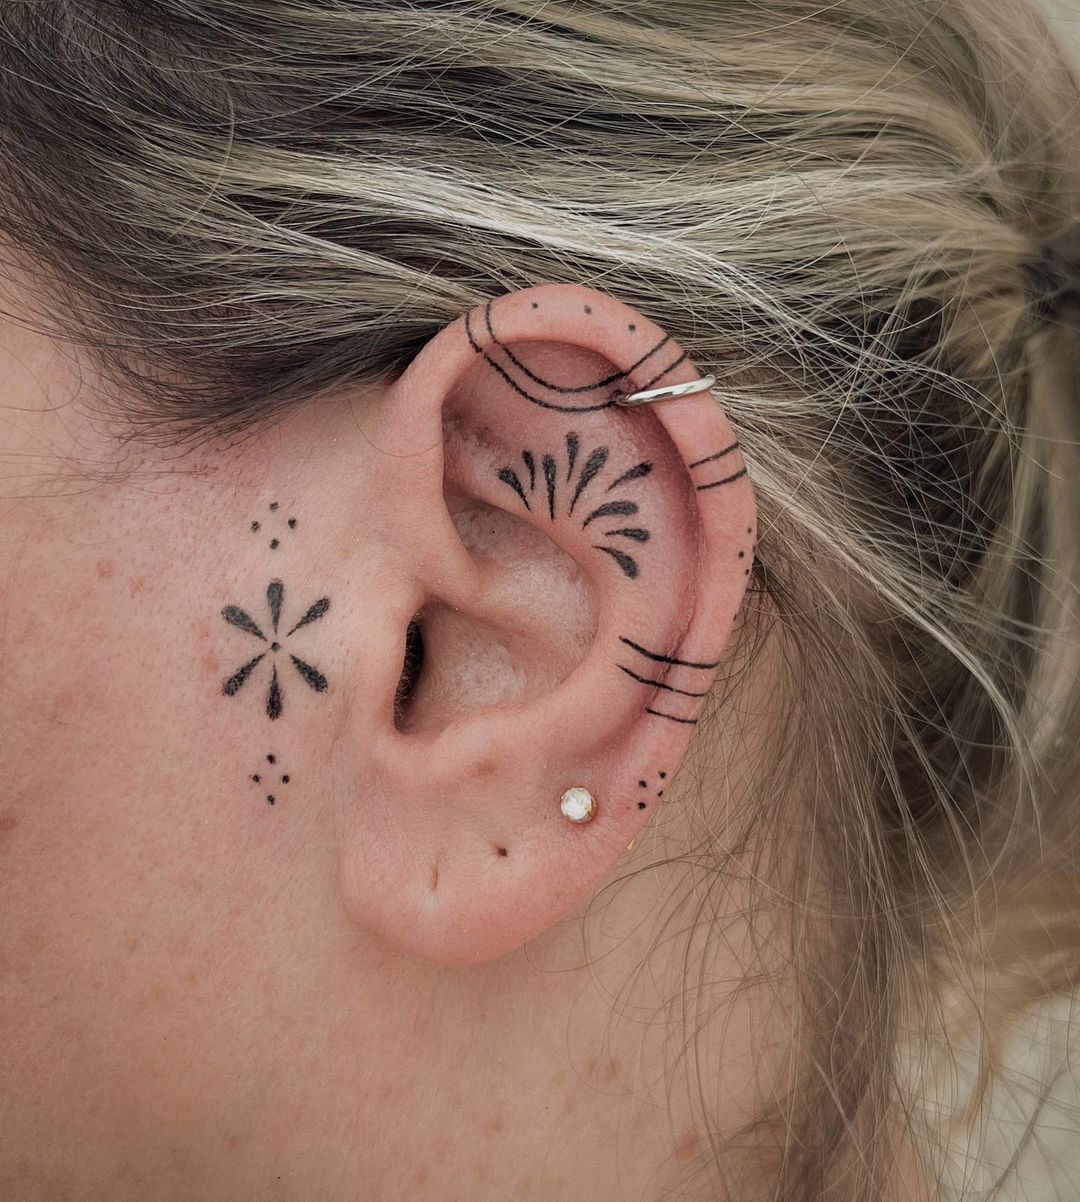 Tattoo on ear by melpzvc